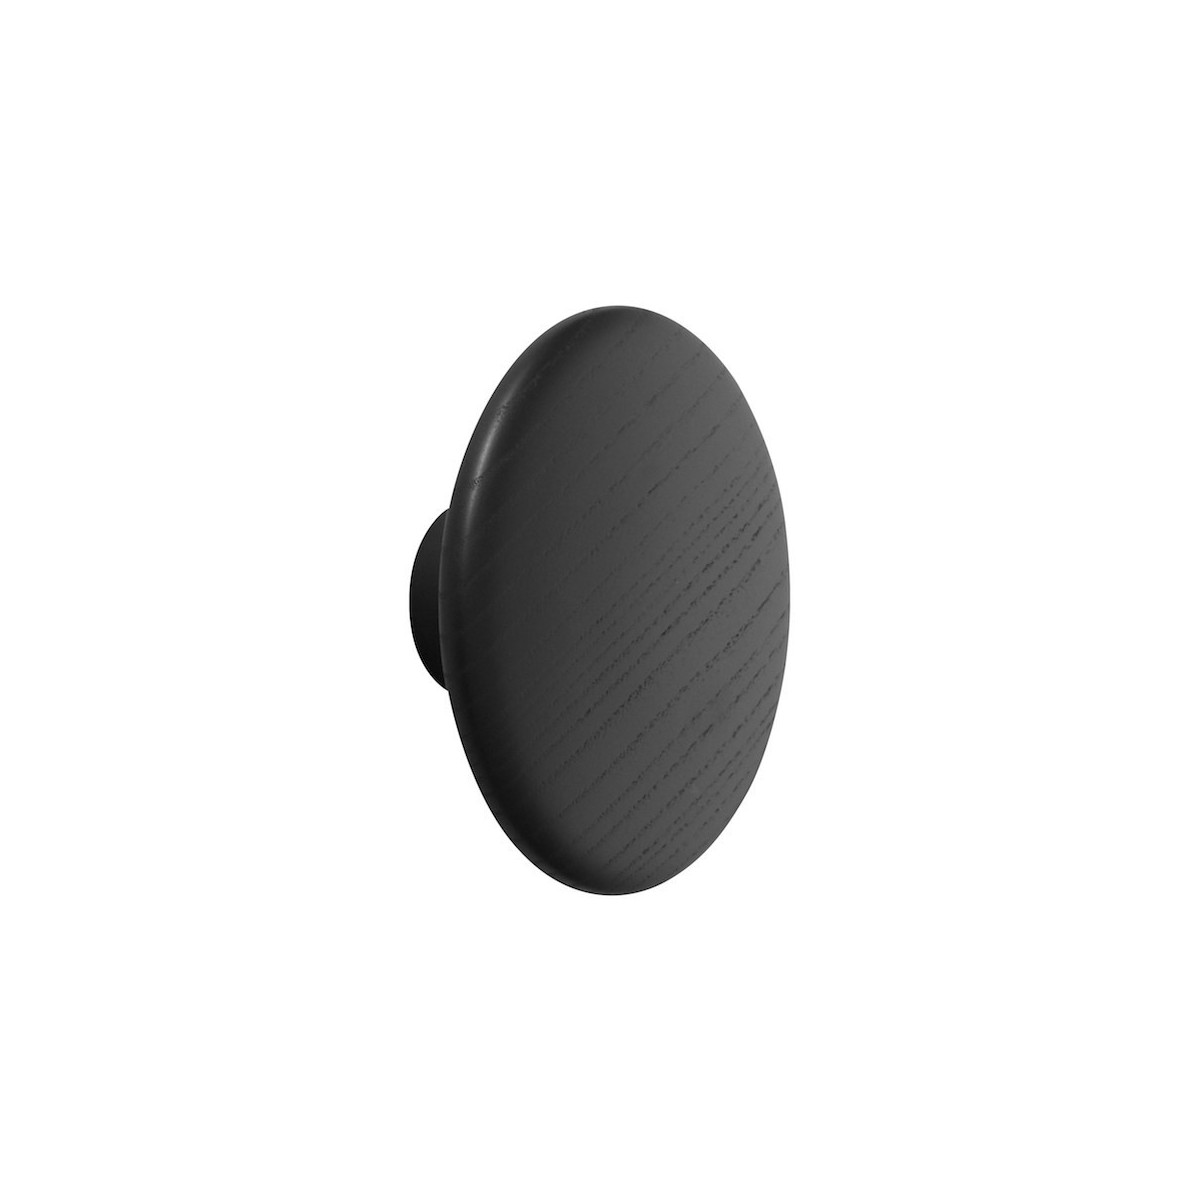 Ø6,5 cm (XS) - black - The Dots wood